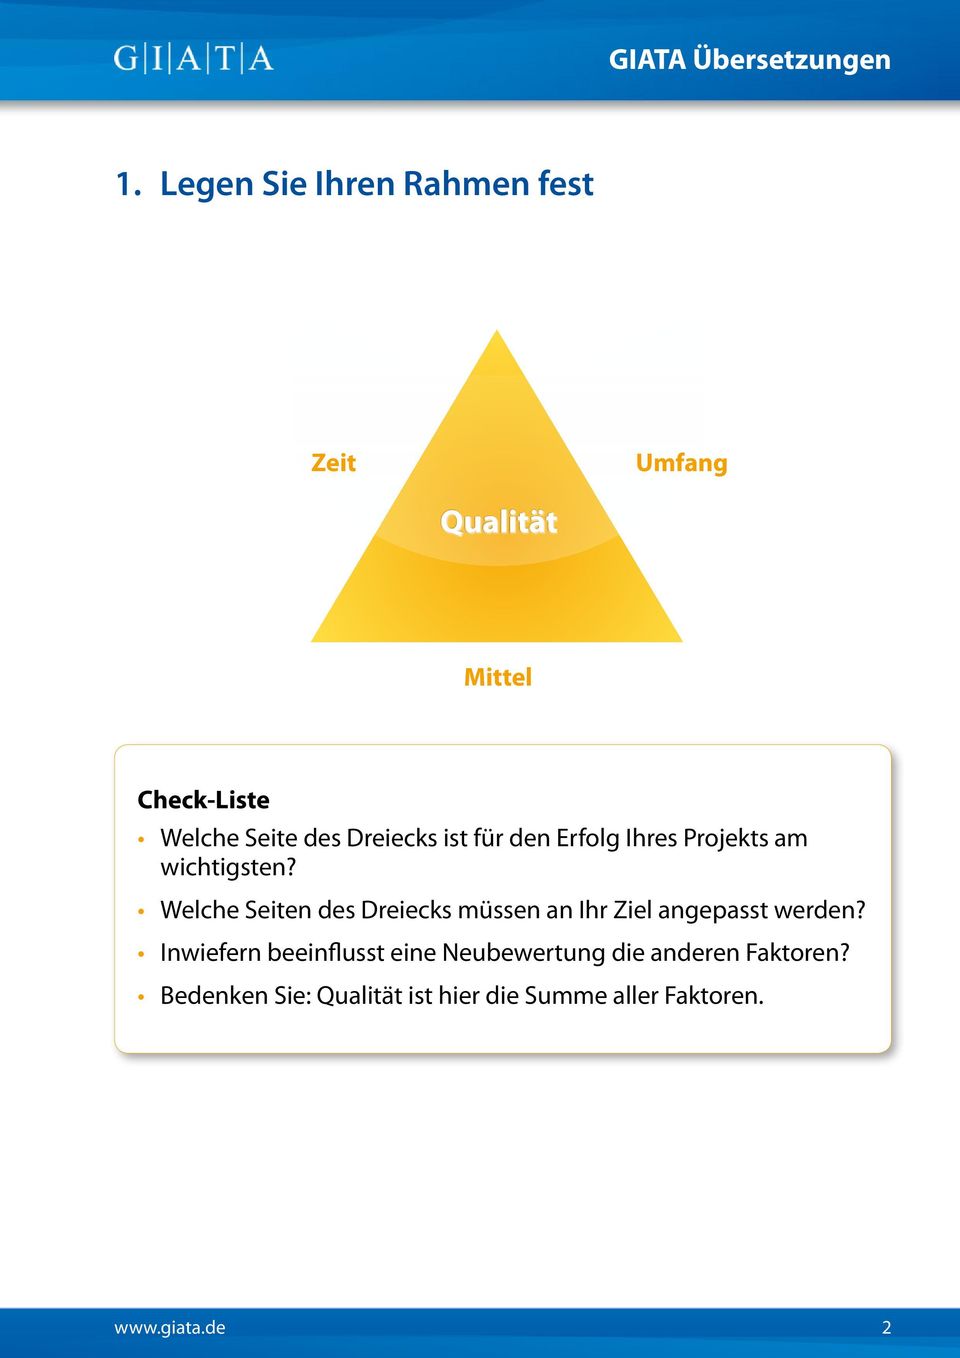 Welche Seiten des Dreiecks müssen an Ihr Ziel angepasst werden?